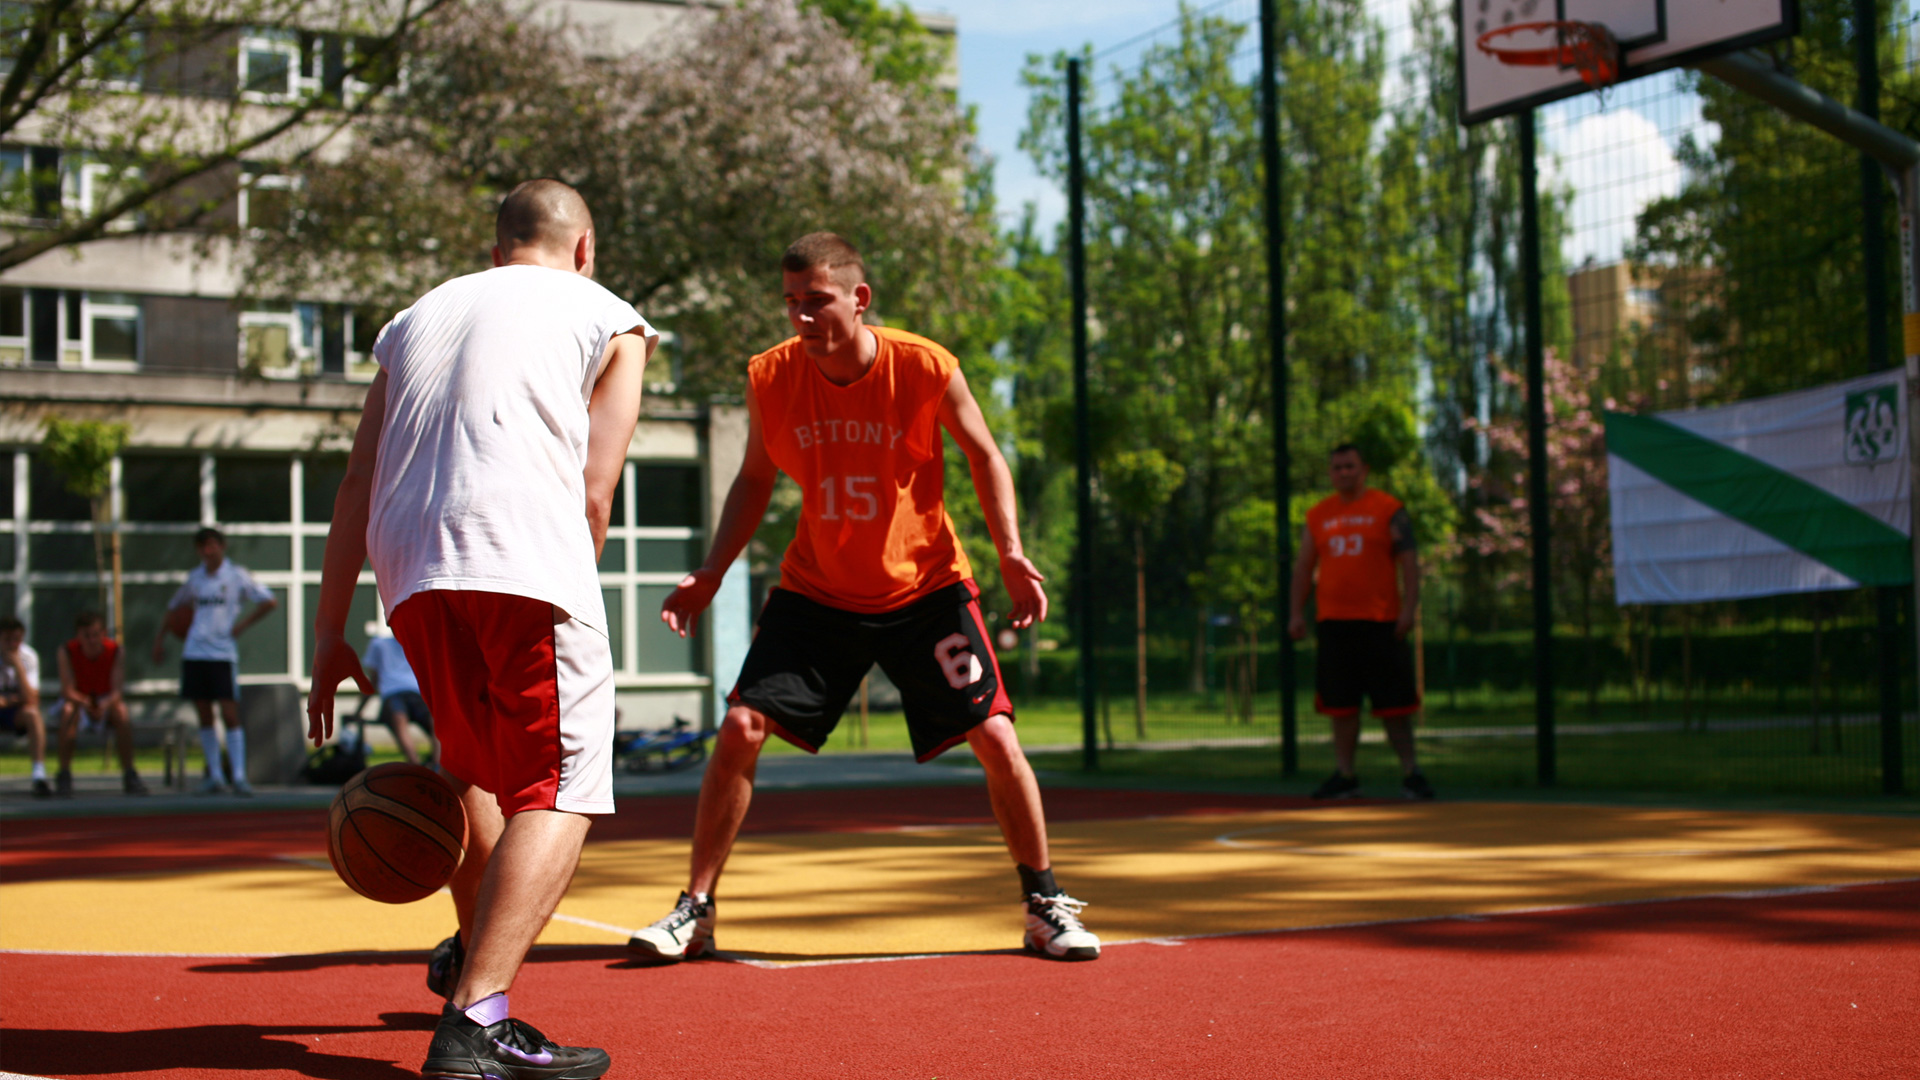 Zdjęcie dwójki koszykarzy grających w koszykówkę na tartanowym boisku, wykonane w ciepły słoneczny dzień. Powierzchnia boiska ma żółto-pomarańczowe kolory.